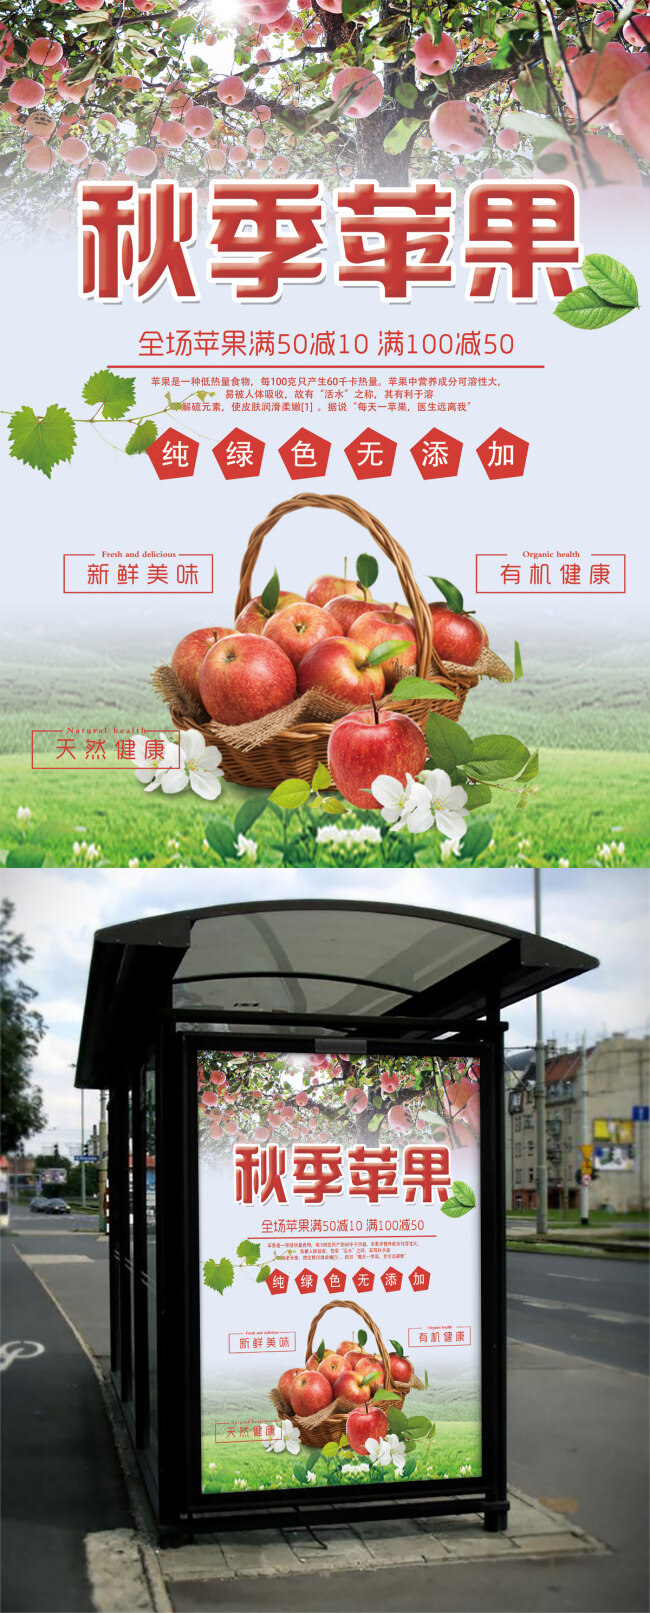 时尚 清新 秋季 苹果 促销 宣传海报 水果 秋季水果 苹果海报 苹果广告 苹果促销广告 苹果促销海报 苹果促销 苹果广告设计 苹果宣传 秋季苹果广告